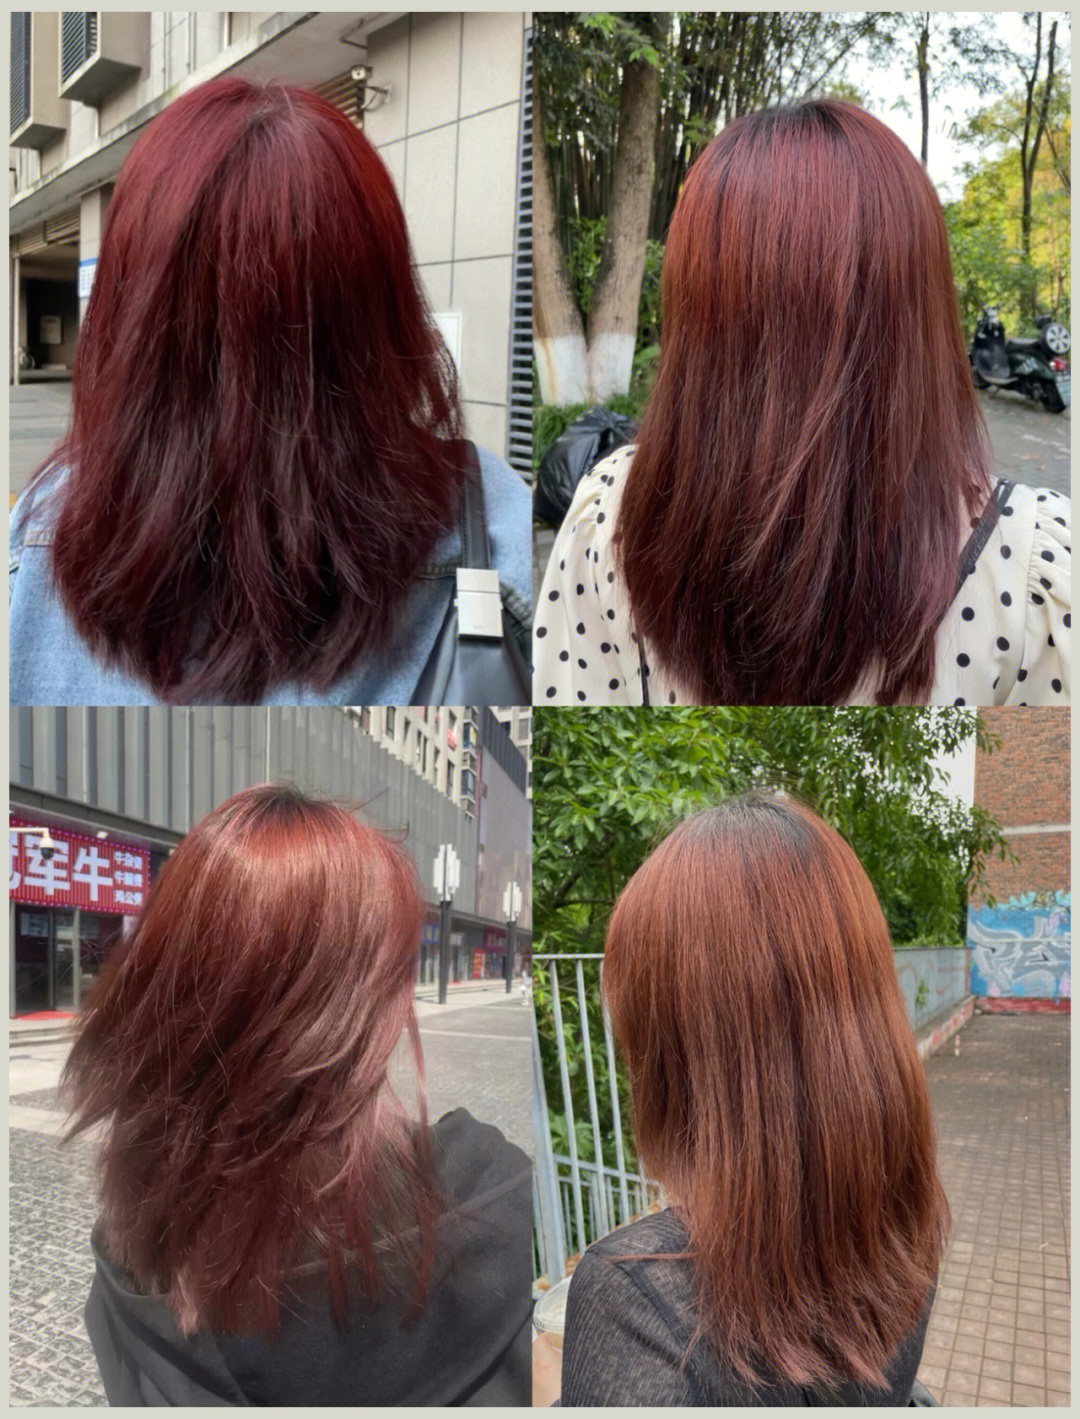 自染红发两个月掉色详细过程变成橘棕啦